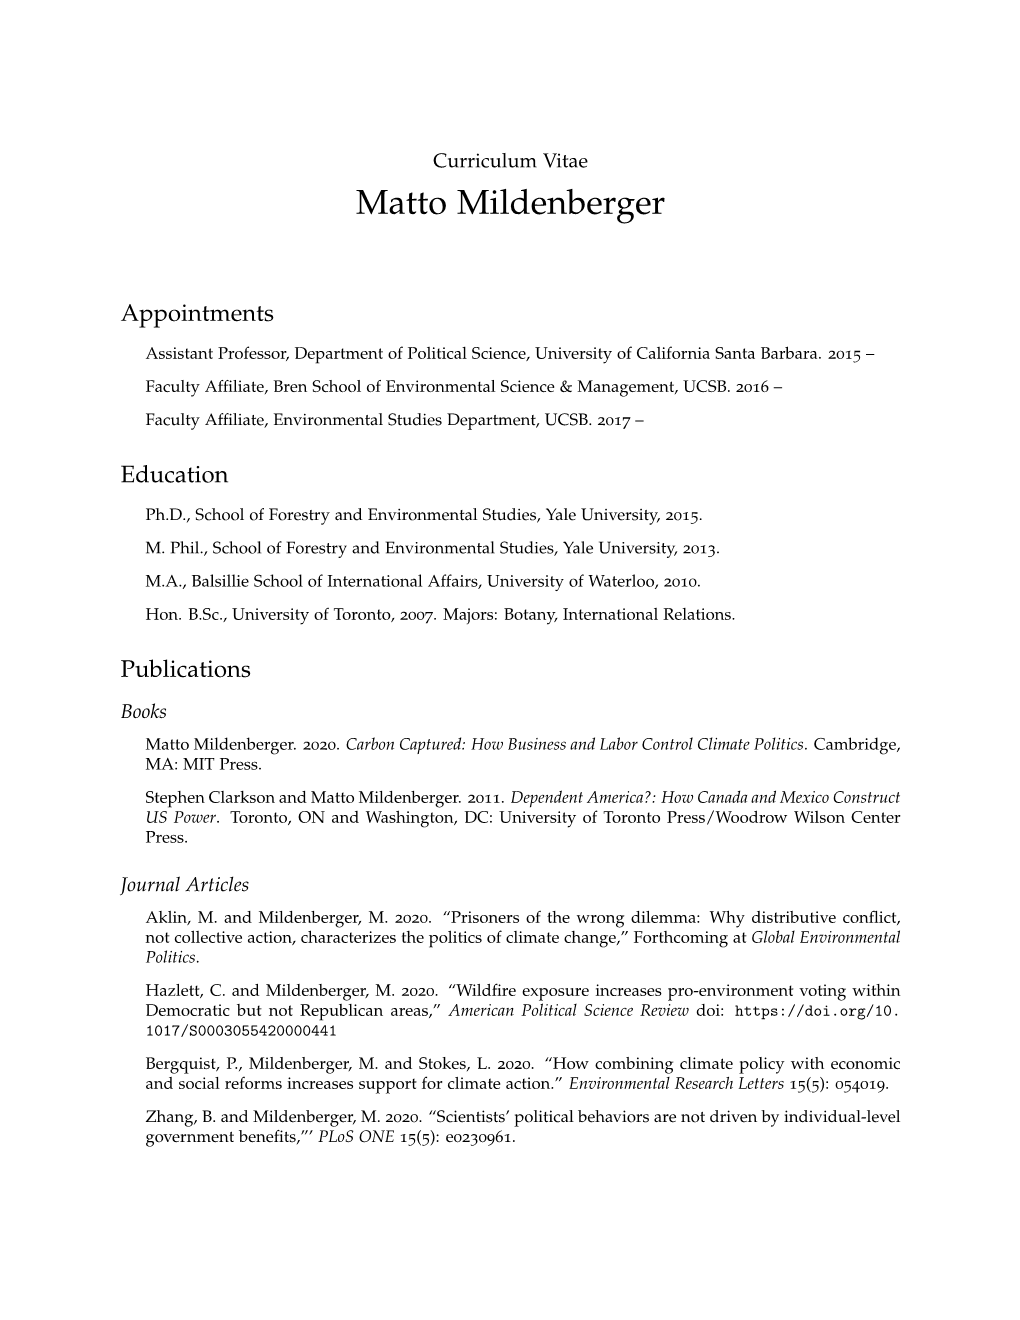 Matto Mildenberger: Curriculum Vitae